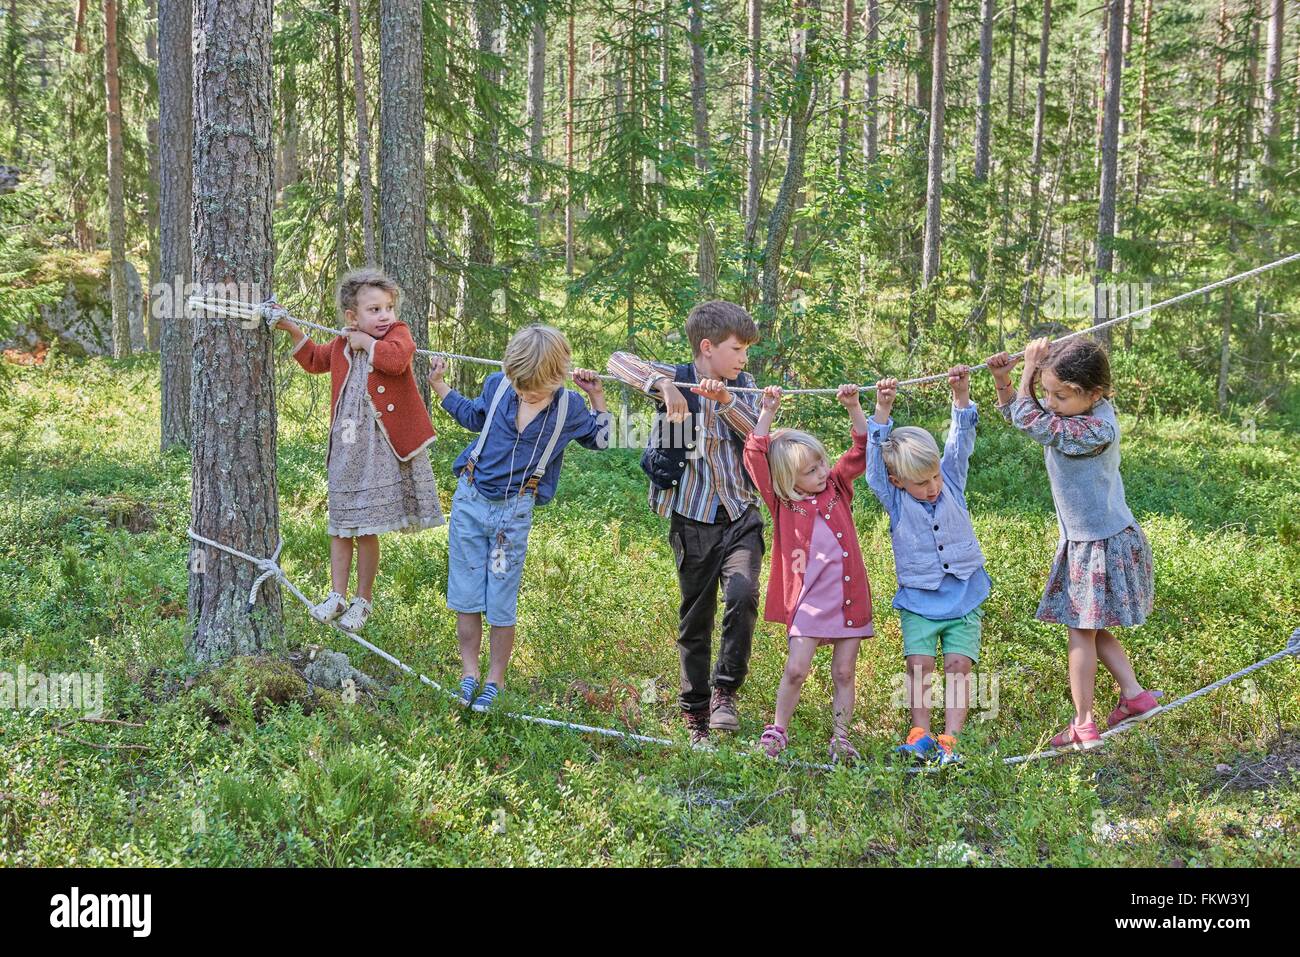 Mädchen und jungen, die Retro-Kleidung, balancieren auf Seilen im Wald Stockfoto